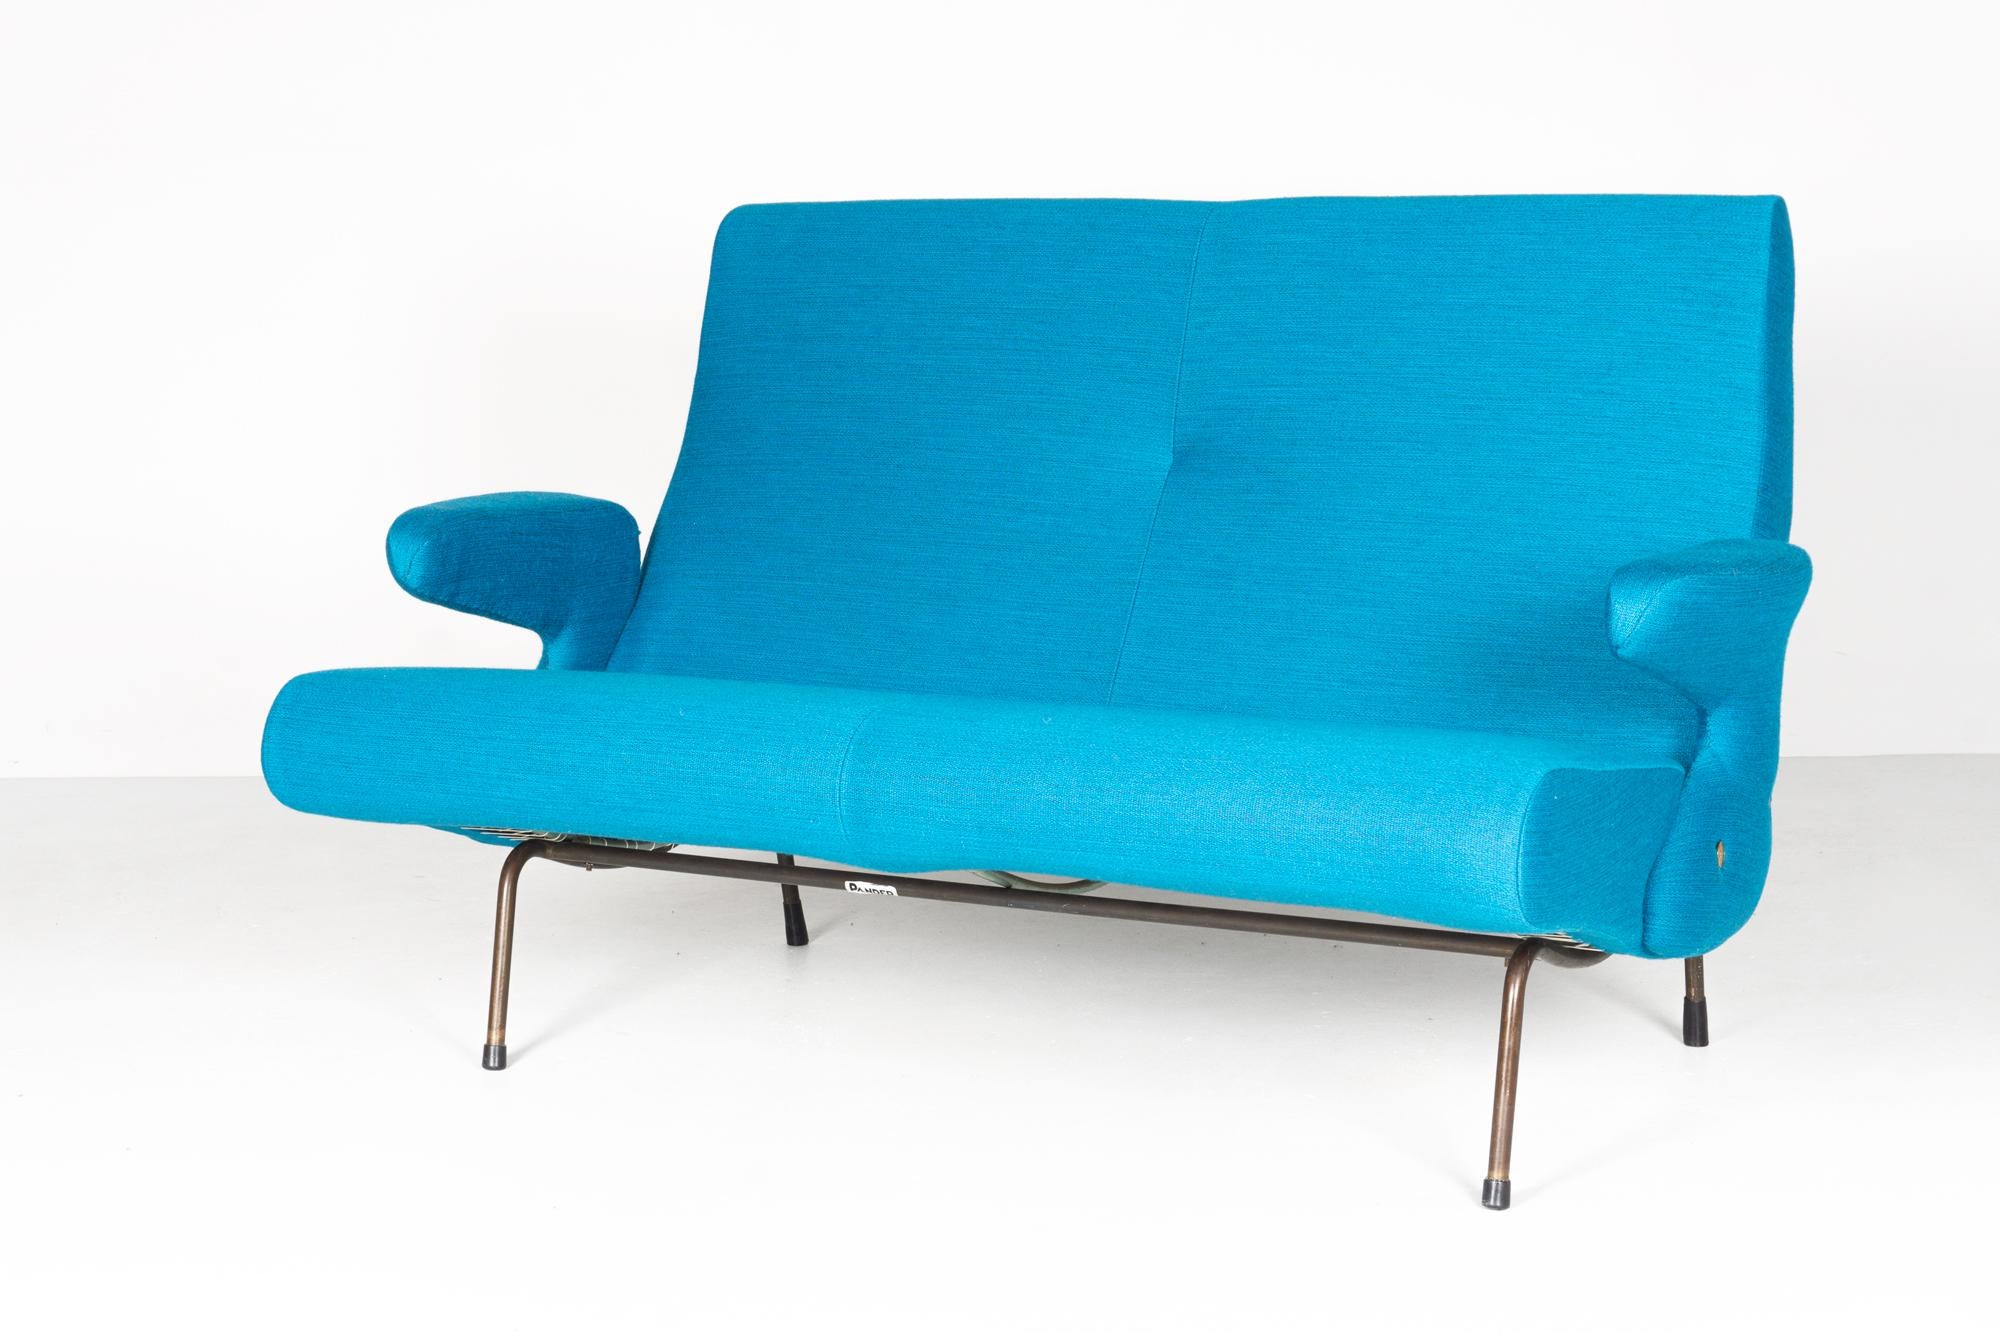 Zweisitziges Sofa, Modell 'Delfino' von Erberto Carboni, Arflex, 1954.
Vollständig neue Polsterung im Stil des Originals von 1954. Hochwertiges dänisches Wollgewebe.

